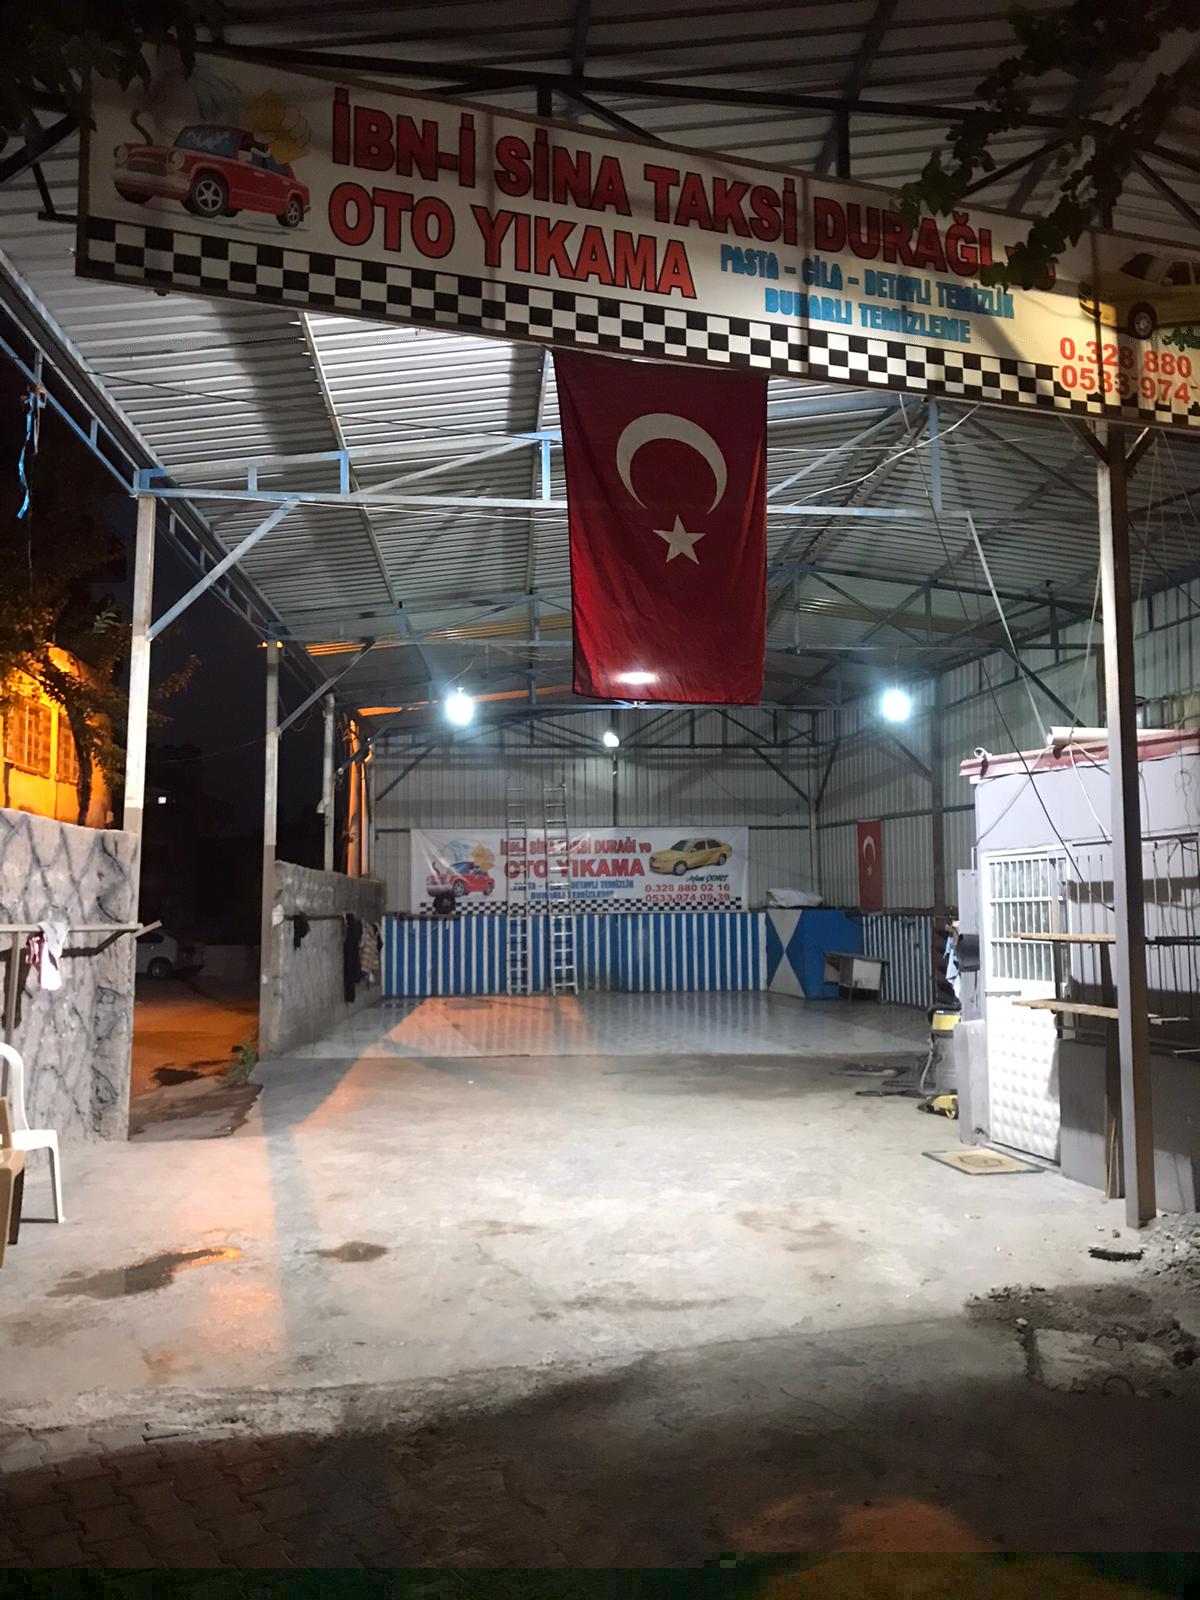 Osmaniye Detaylı Buharlı Oto Yıkama Firması & İbn-i Sina Oto Yıkama Ve Taksi Durağı